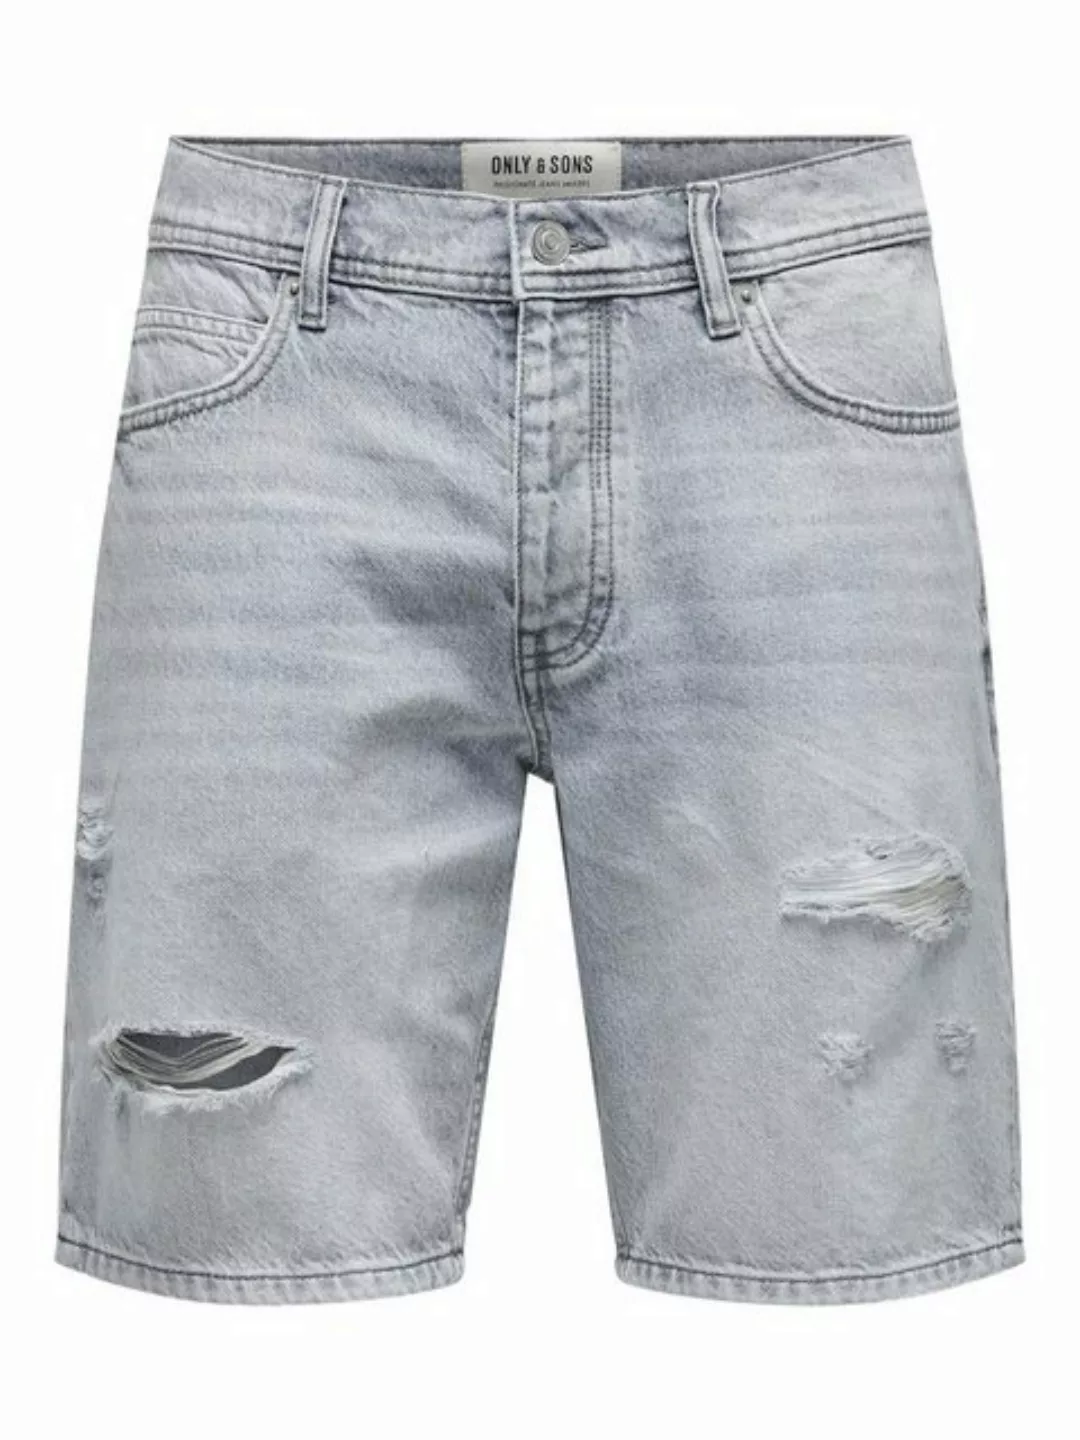 ONLY & SONS Jeansshorts Shorts Denim Midi Bermuda Mid Waist Pants 7654 in G günstig online kaufen